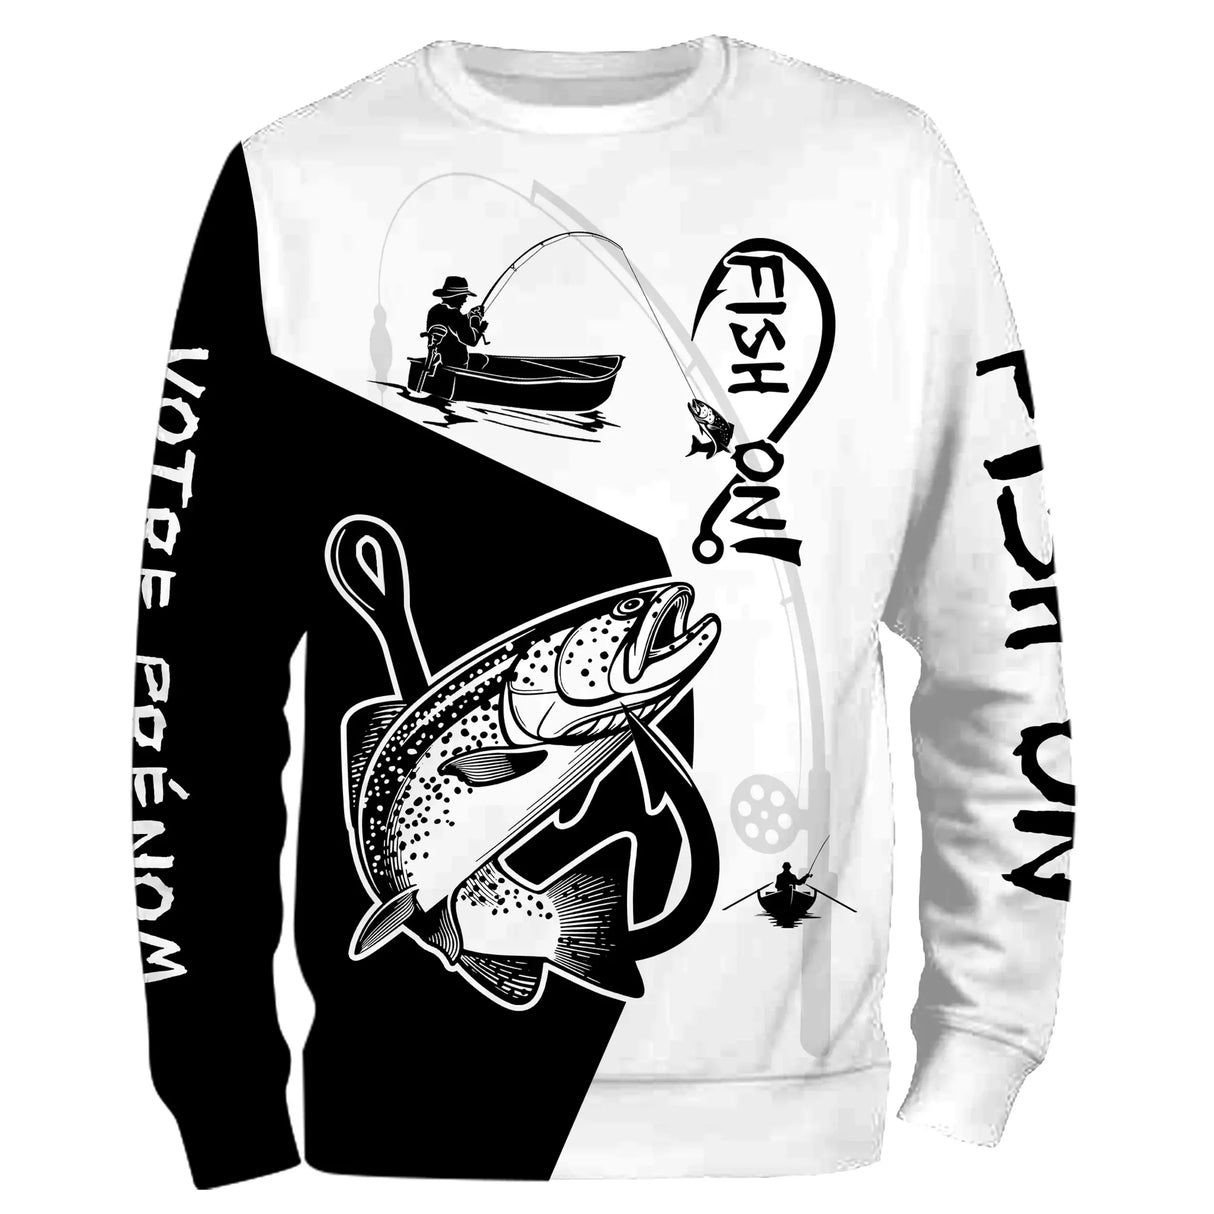 T-Shirt de Pêche Personnalisé "Fish On" avec Graphique Truite Dynamique - Style et Performance - CT20072212 Sweater All Over Unisexe